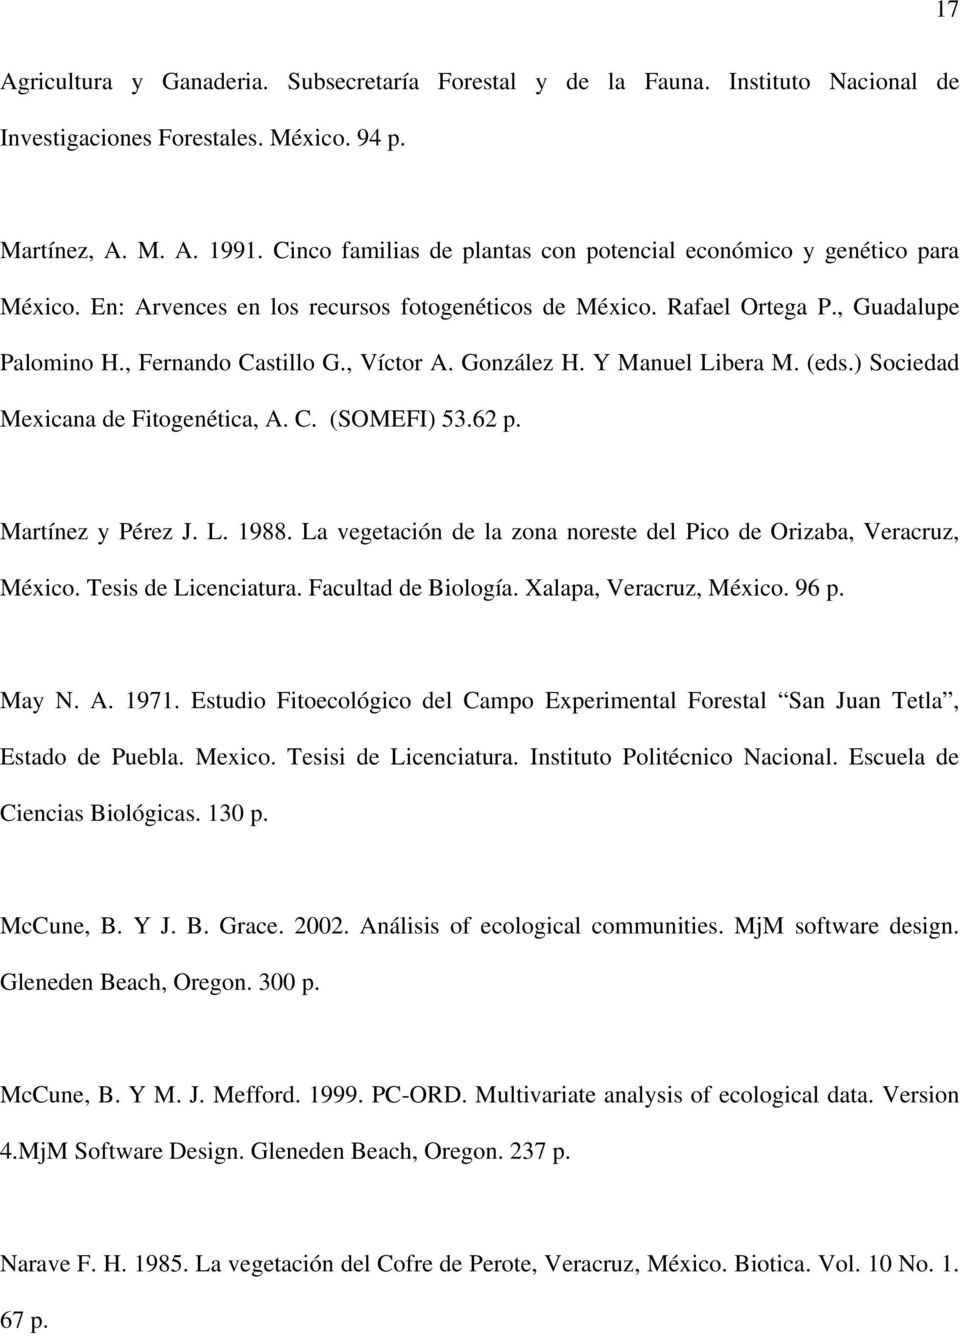 González H. Y Manuel Libera M. (eds.) Sociedad Mexicana de Fitogenética, A. C. (SOMEFI) 53.62 p. Martínez y Pérez J. L. 1988. La vegetación de la zona noreste del Pico de Orizaba, Veracruz, México.